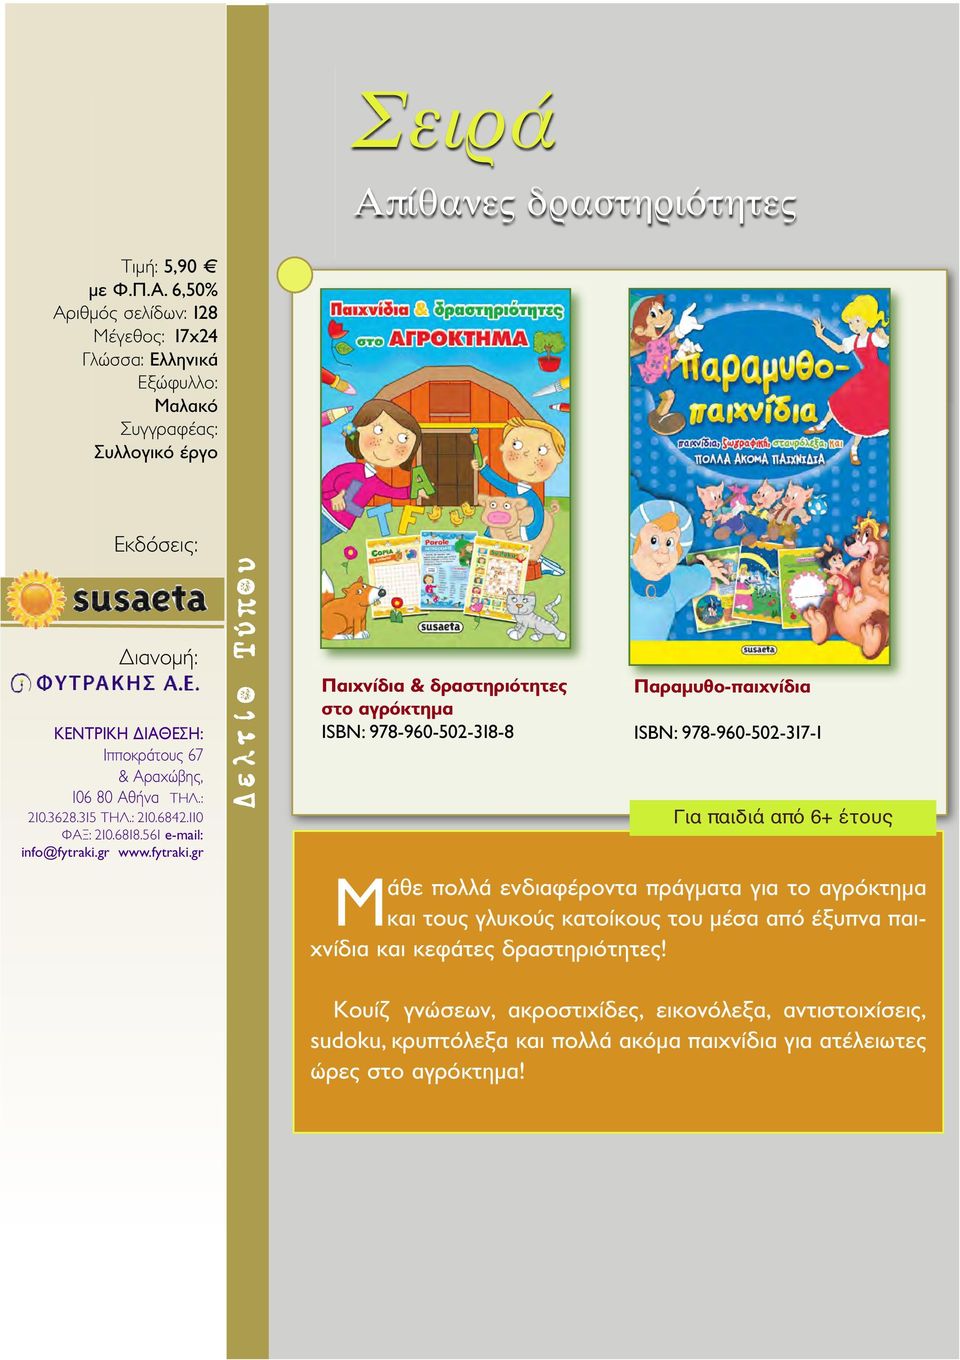 gr Παιχνίδια & δραστηριότητες στο αγρόκτημα ISBN: 978-960-502-318-8 Παραμυθο-παιχνίδια ISBN: 978-960-502-317-1 Για παιδιά από 6+ έτους Μάθε πολλά